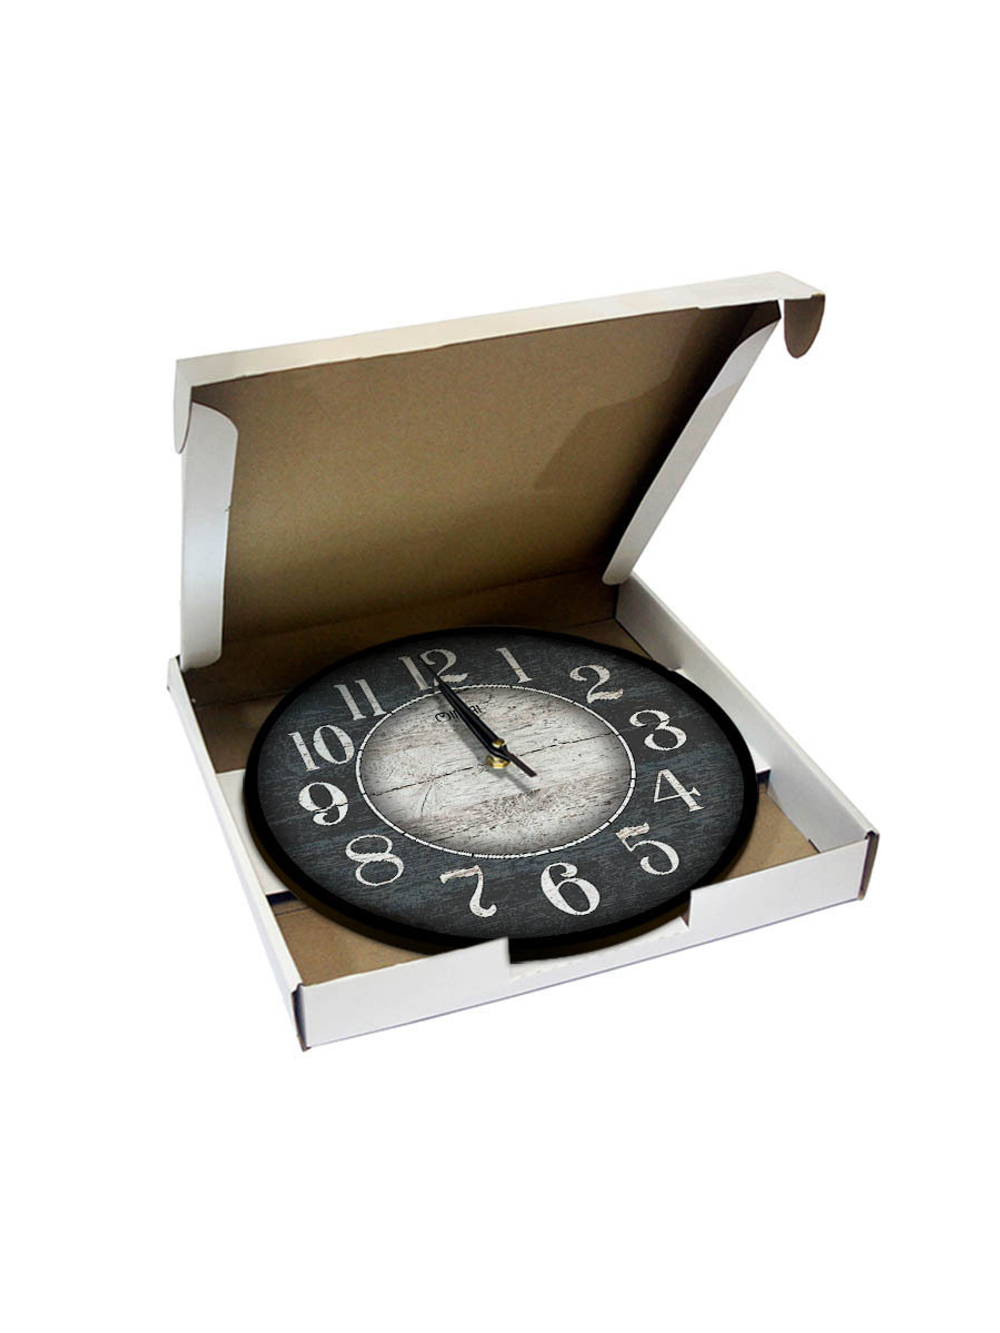 Часы настенные деревянные Ideal "Марсель", 30 см (серый)